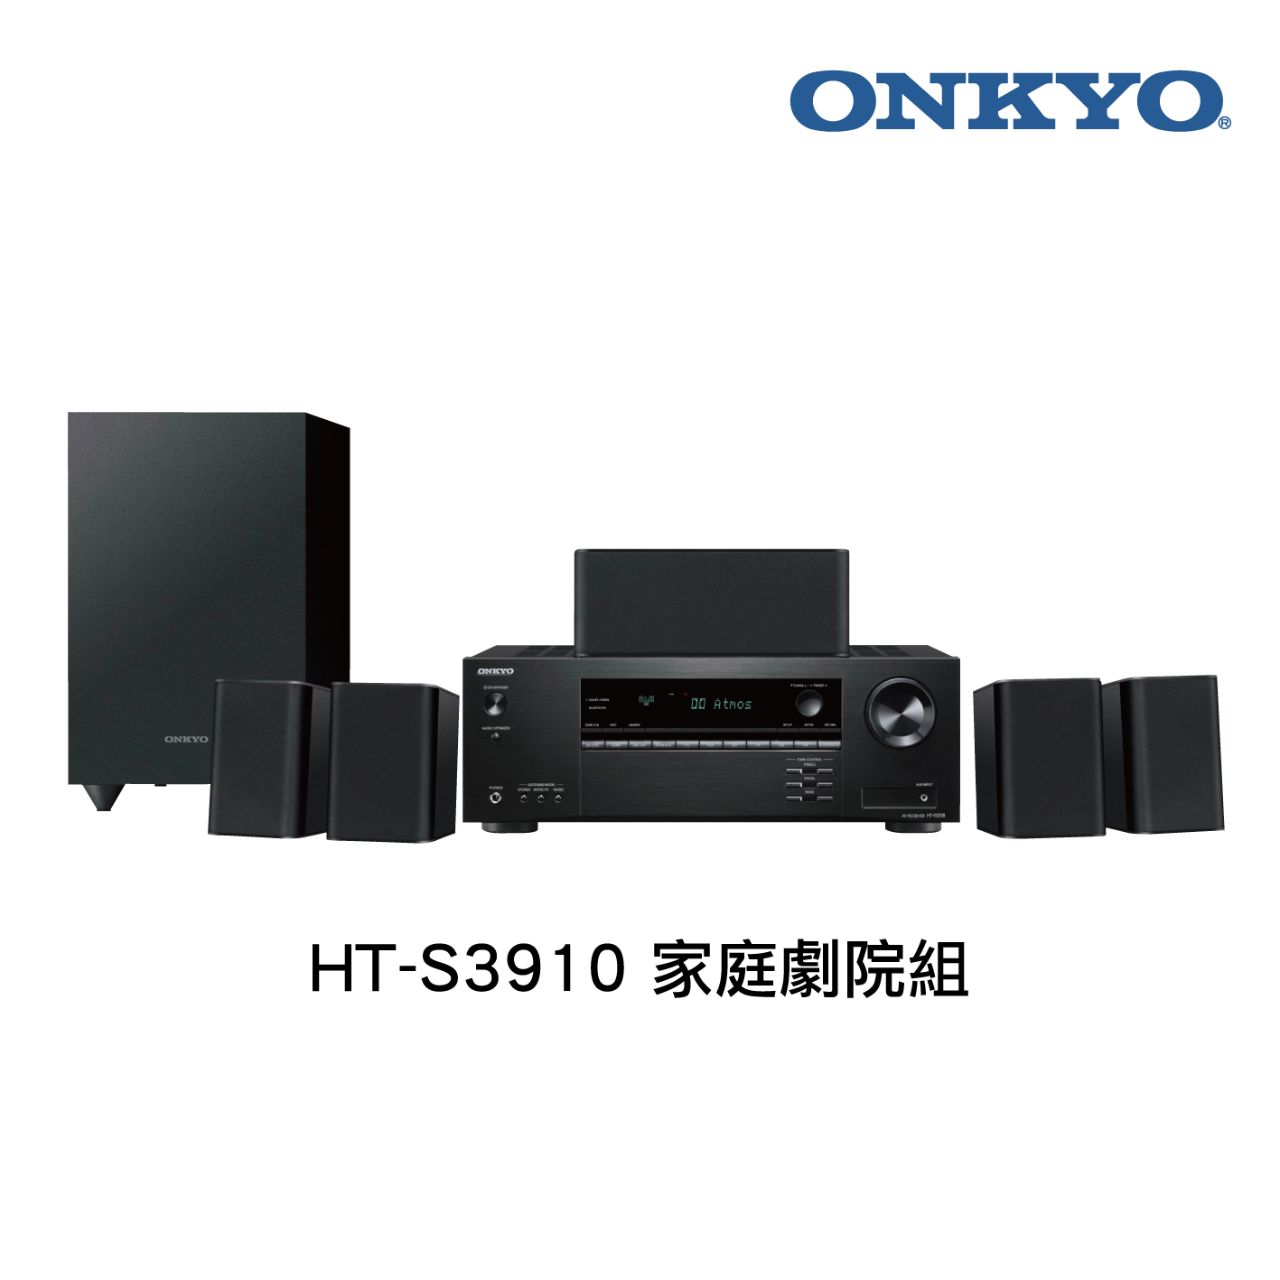 Onkyo HT-S3910